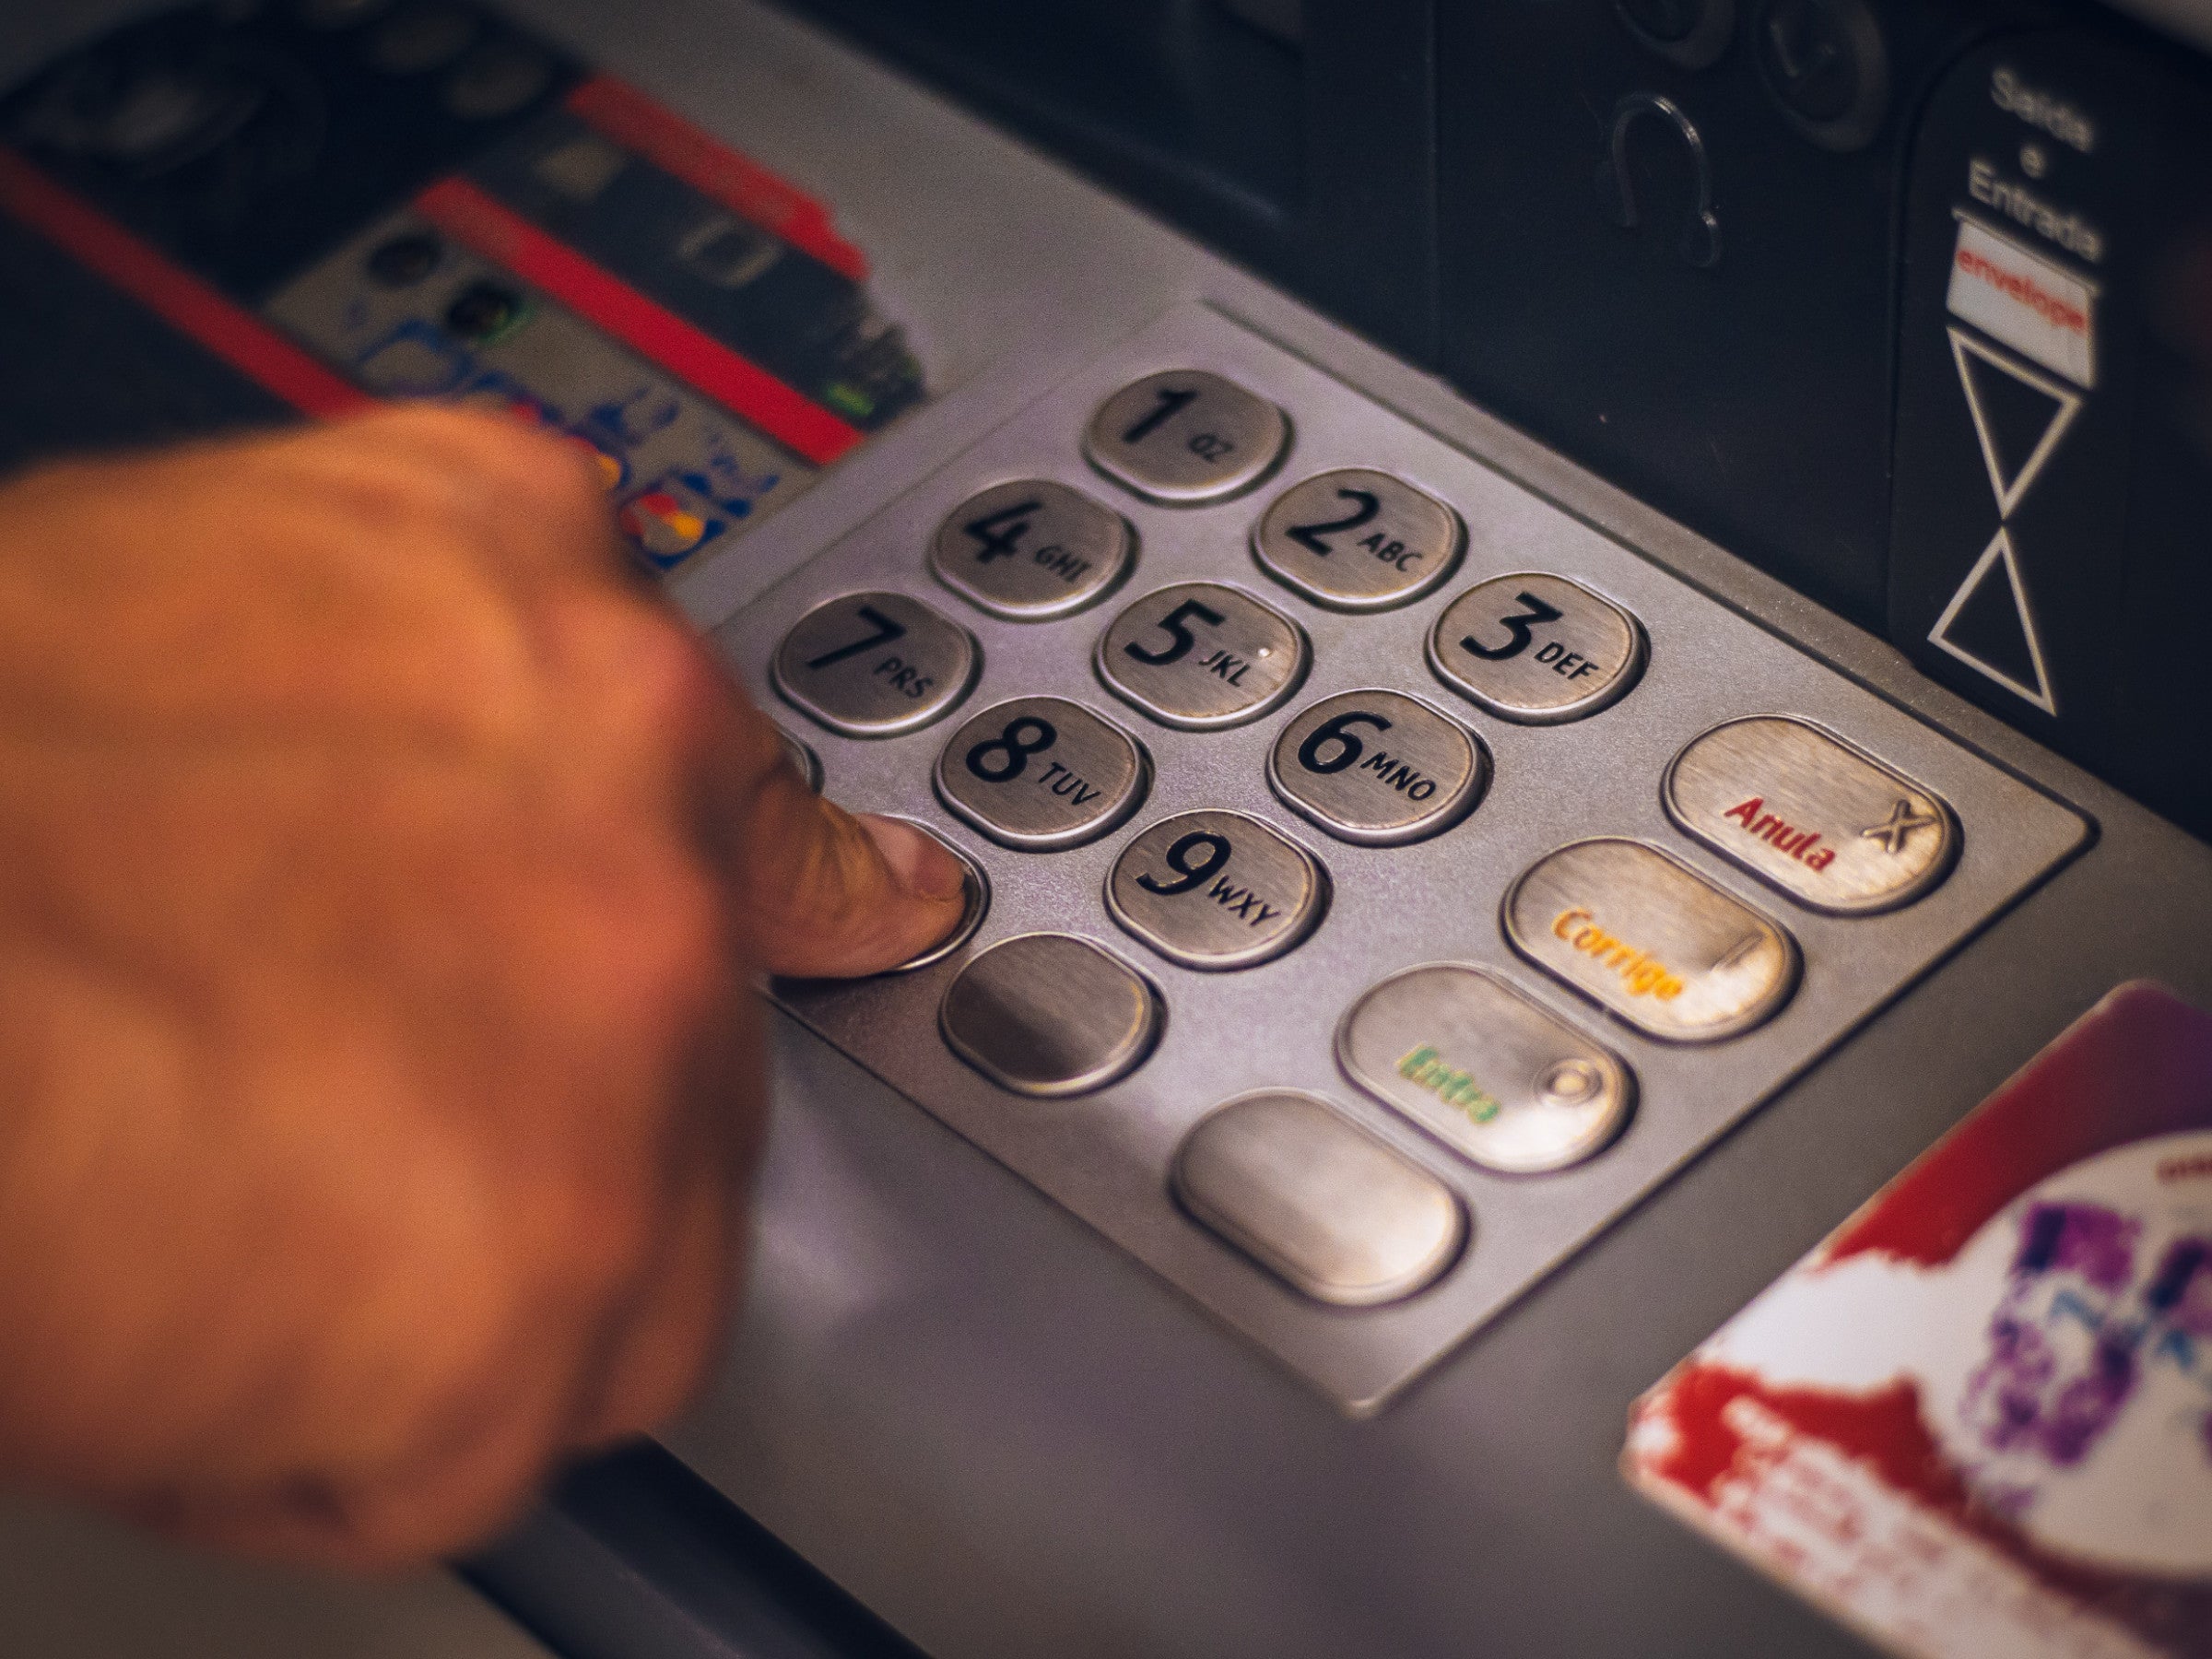 #Volksbank und Raiffeisenbank: Geld abheben am Automaten wird eingeschränkt